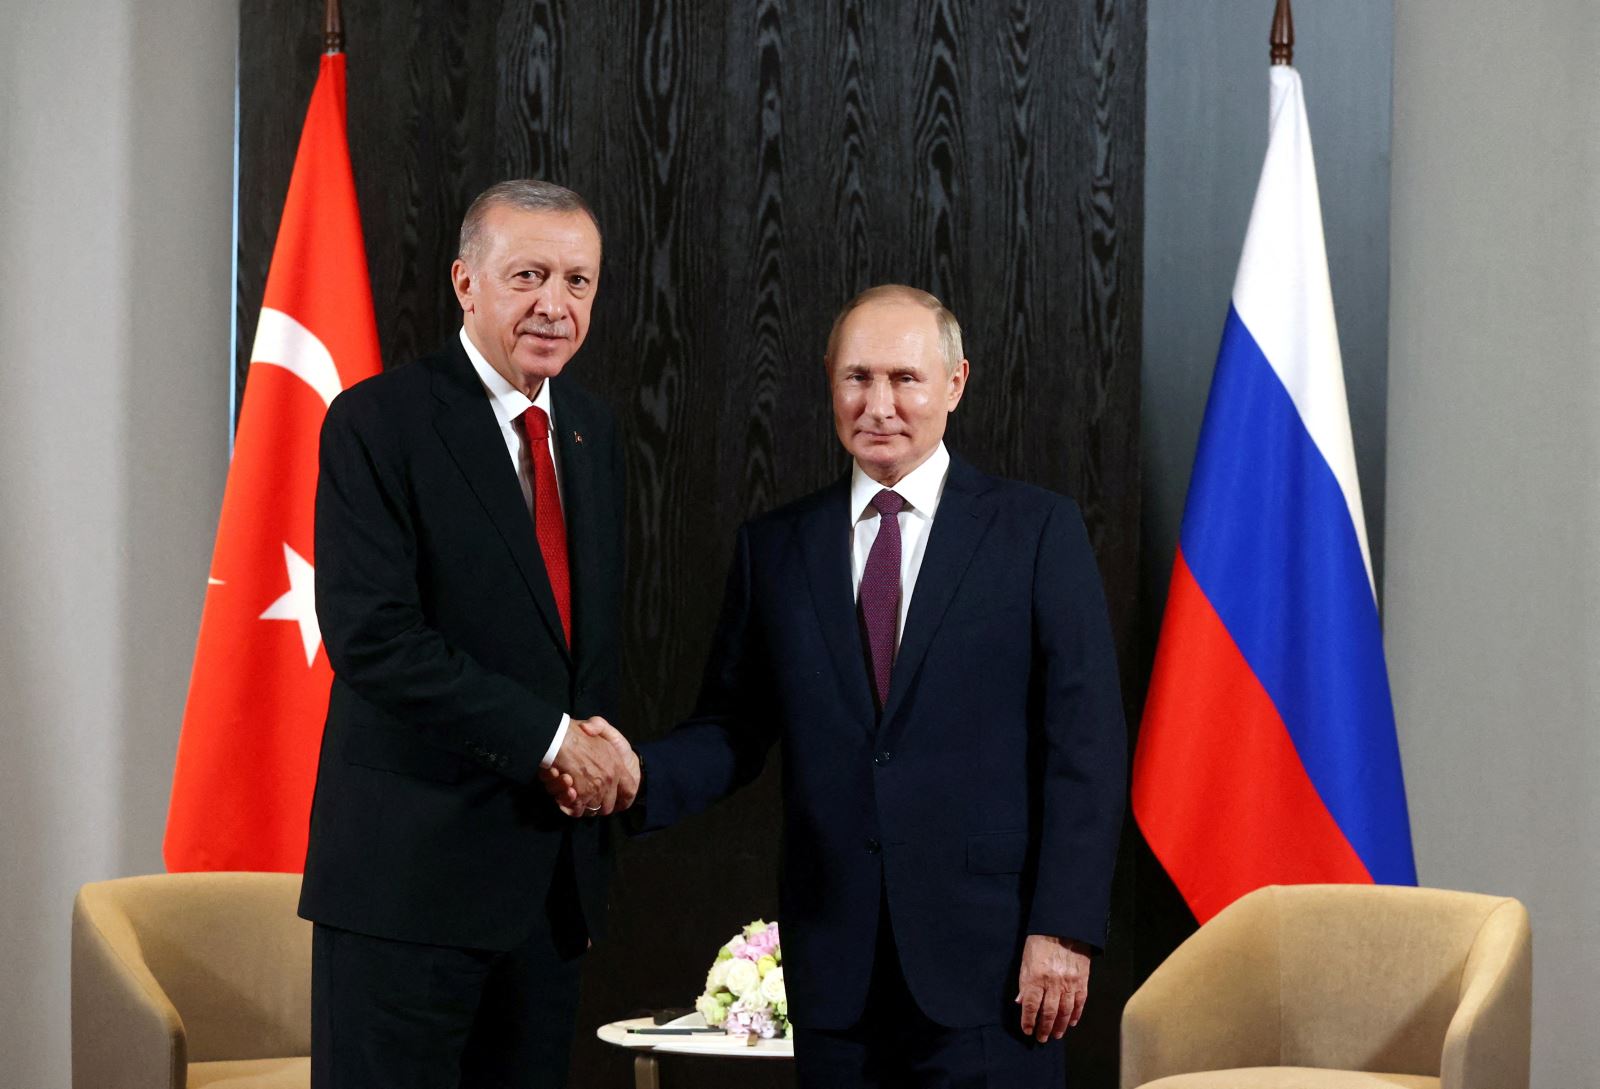 Tổng thống Nga Vladimir Putin (Phải) và người đồng cấp Thổ Nhĩ Kỳ Tayyip Erdogan bắt tay trong cuộc gặp bên lề Hội nghị thượng đỉnh Tổ chức Hợp tác Thượng Hải (SCO) tại Samarkand, Uzbekistan ngày 16-9-2022. Ảnh: Reuters